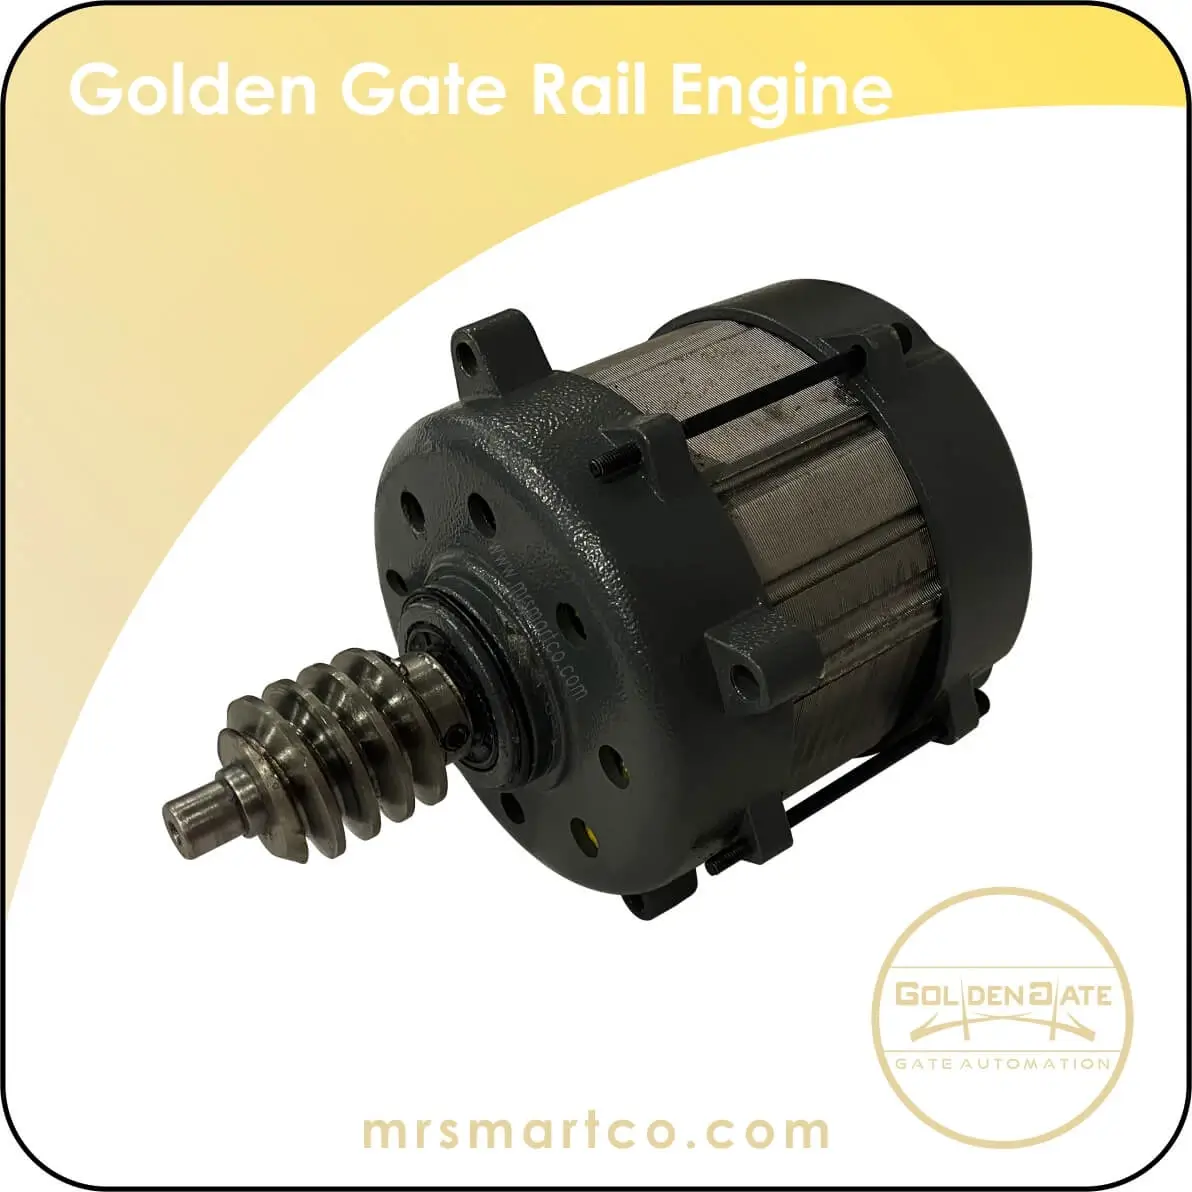 Golden Gate Rail Engine